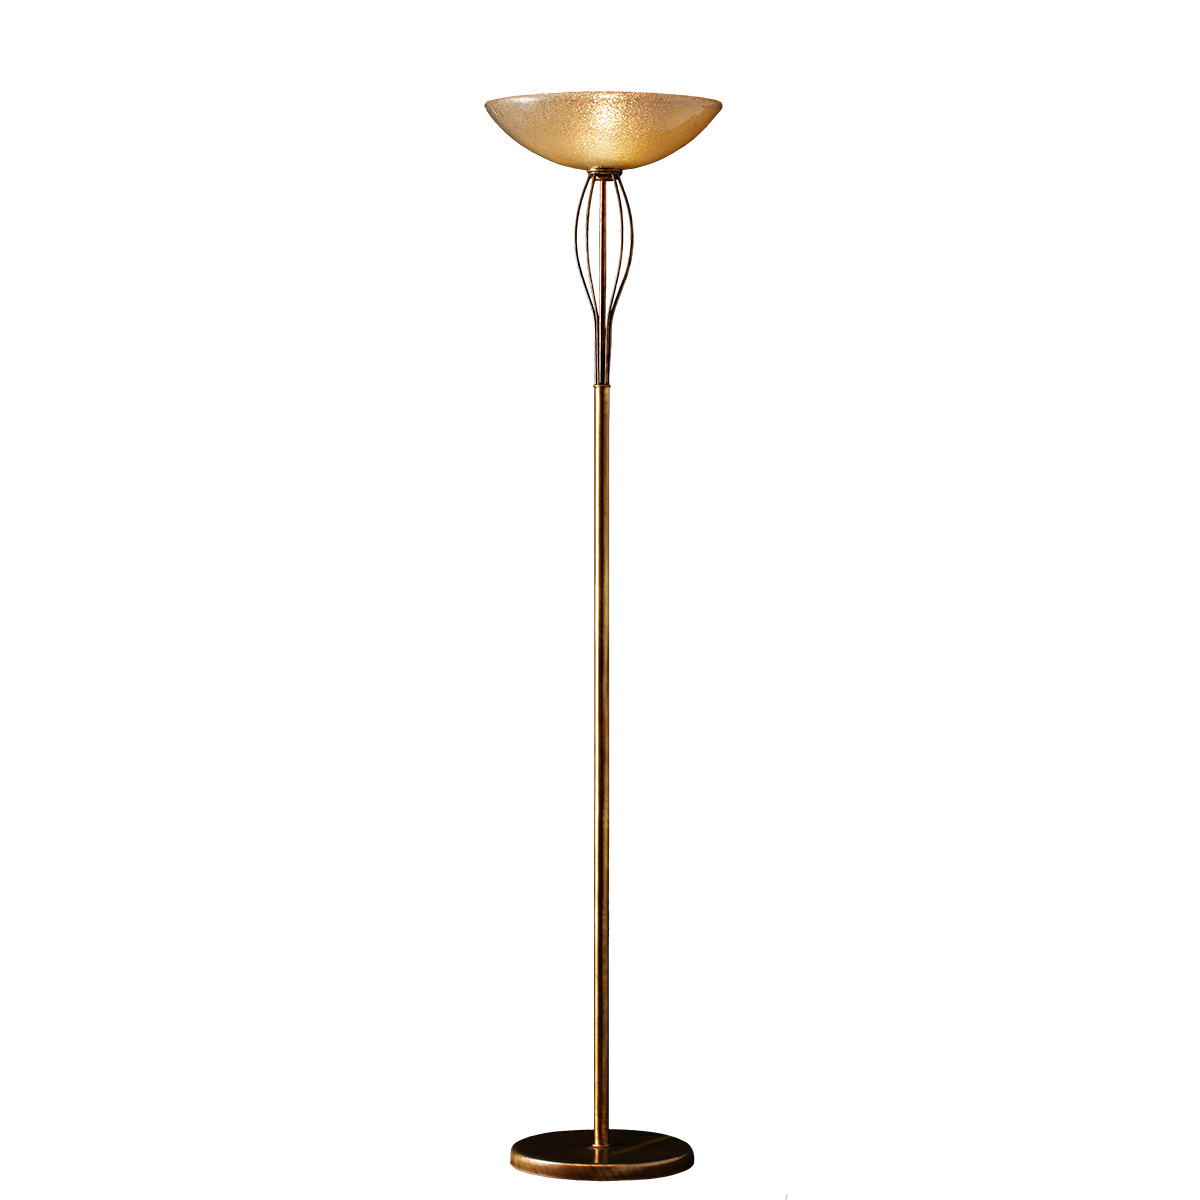 Φωτιστικό δαπέδου με κρύσταλλο Murano ΝΥΜΦΑΙΟ classic floor lamp with Murano crystal